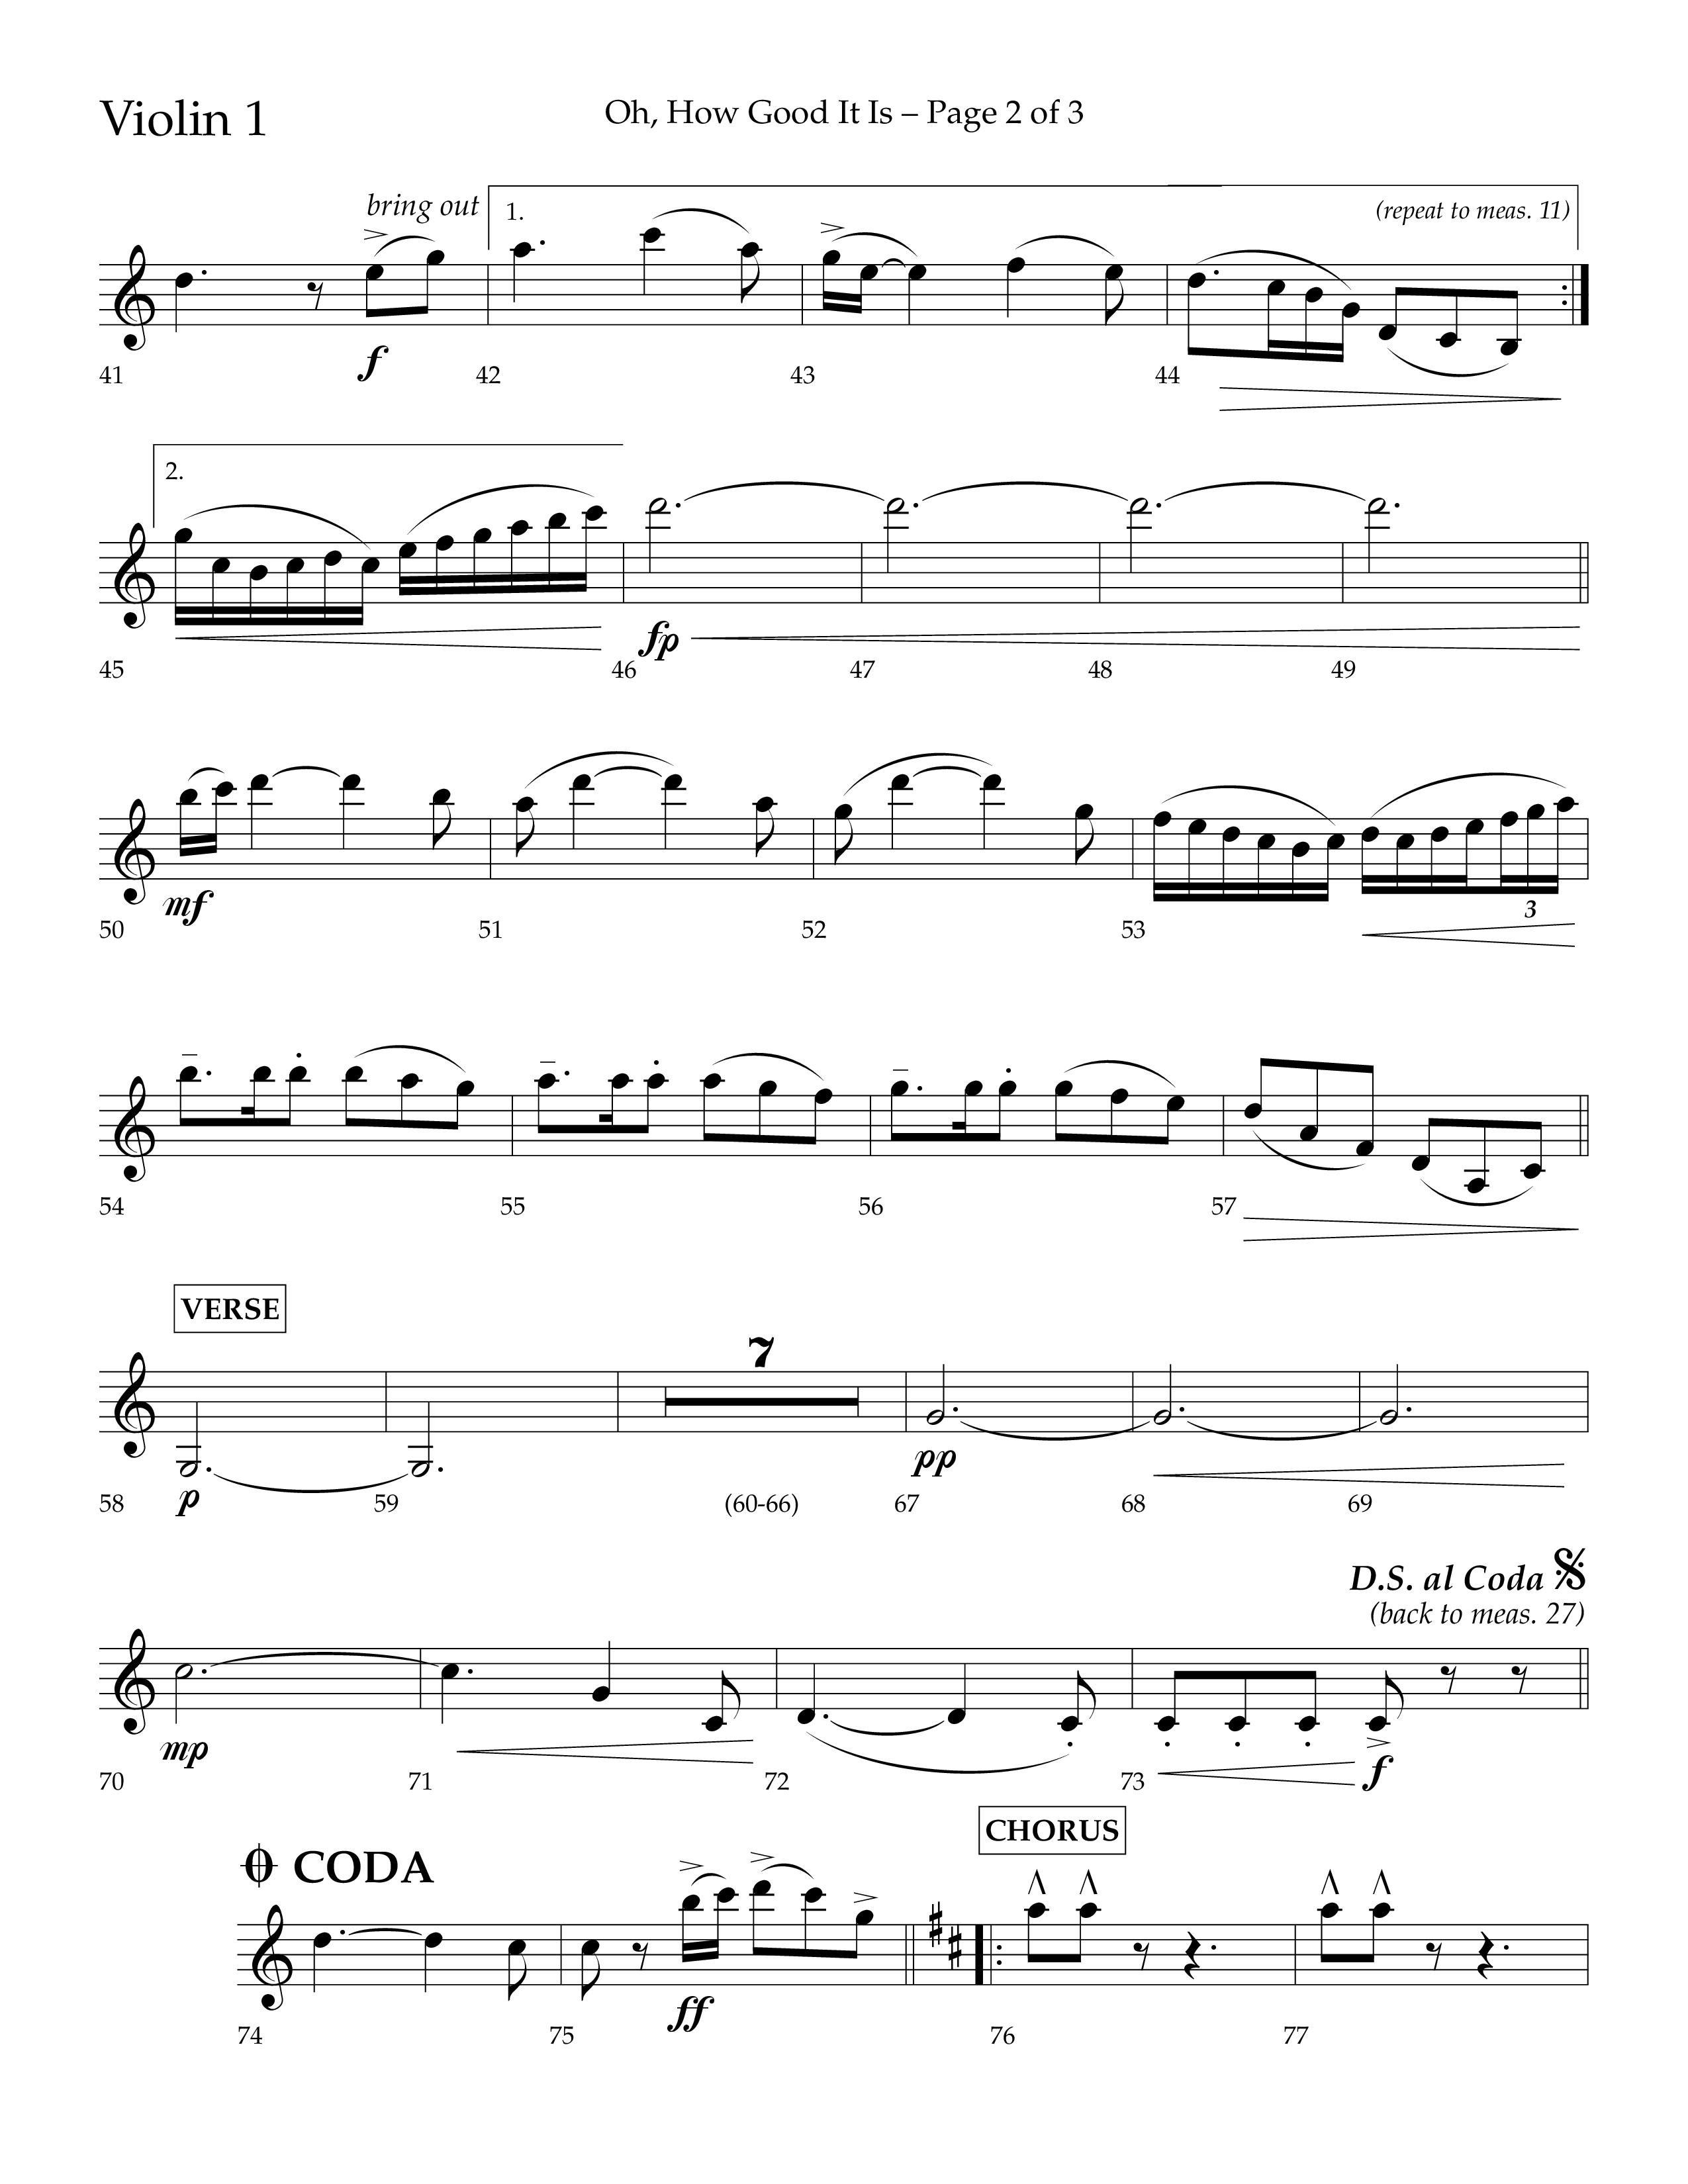 Oh How Good It Is (Choral Anthem SATB) Violin 1 (Lifeway Choral / Arr. David Hamilton)